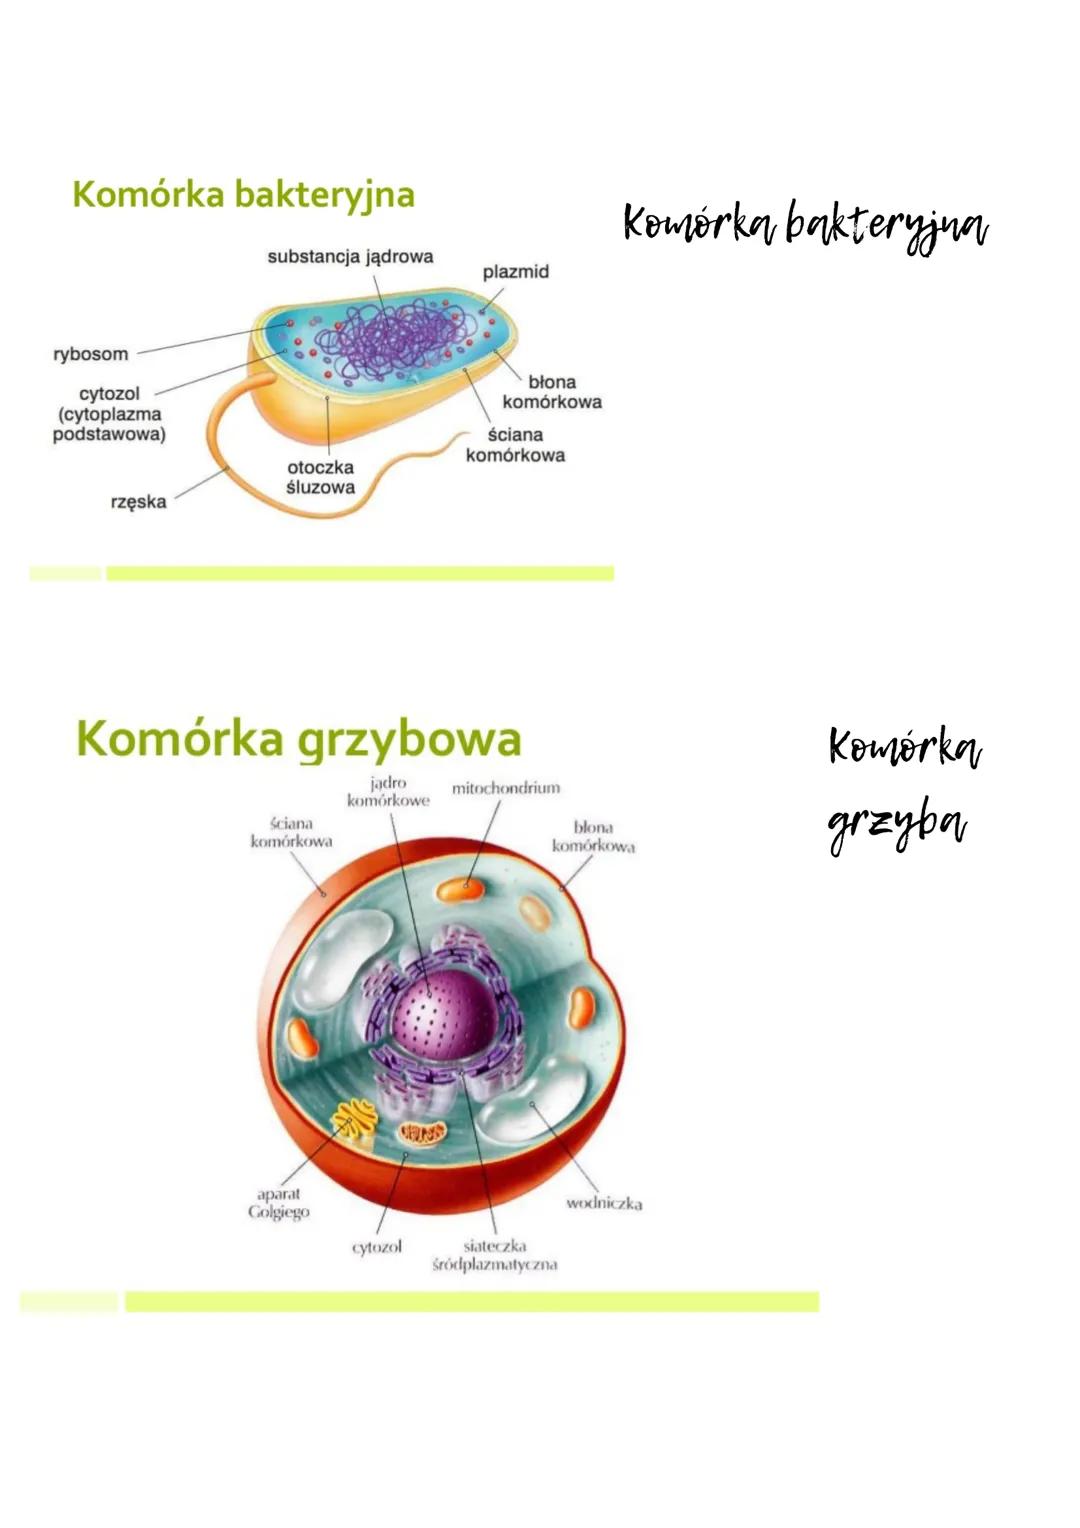 Komórka jest najmniejszą strukturą budującą organizm, która ma wszystkie
cechy istoty żywej. Różnią się one wielkością.
Komórka roślinna
1- 